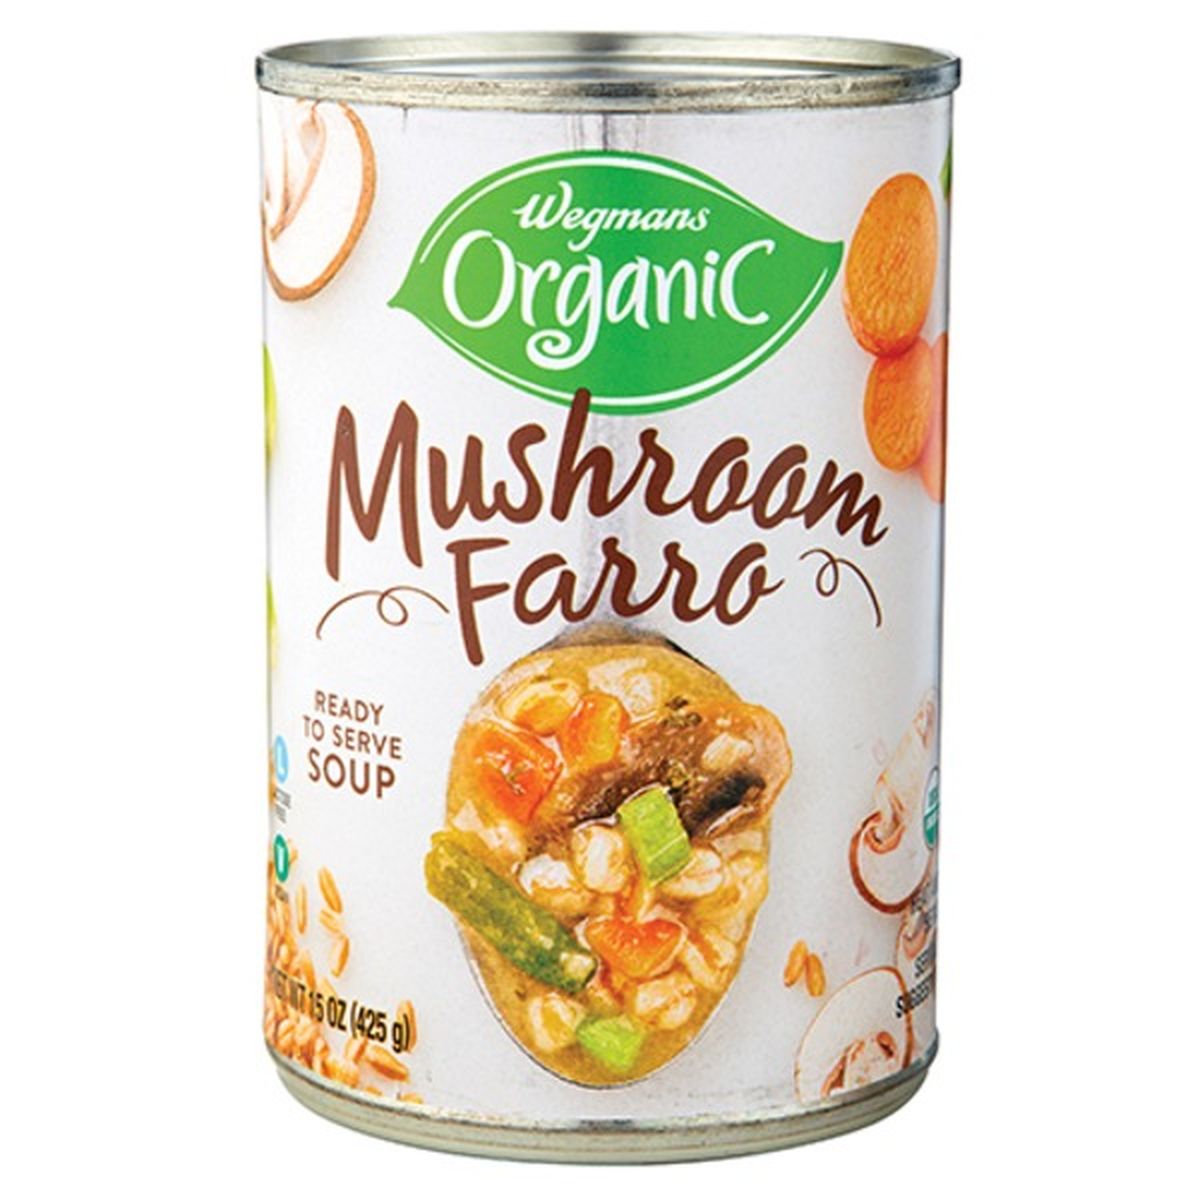 Calories in Wegmans Organic Mushroom Farro Soup